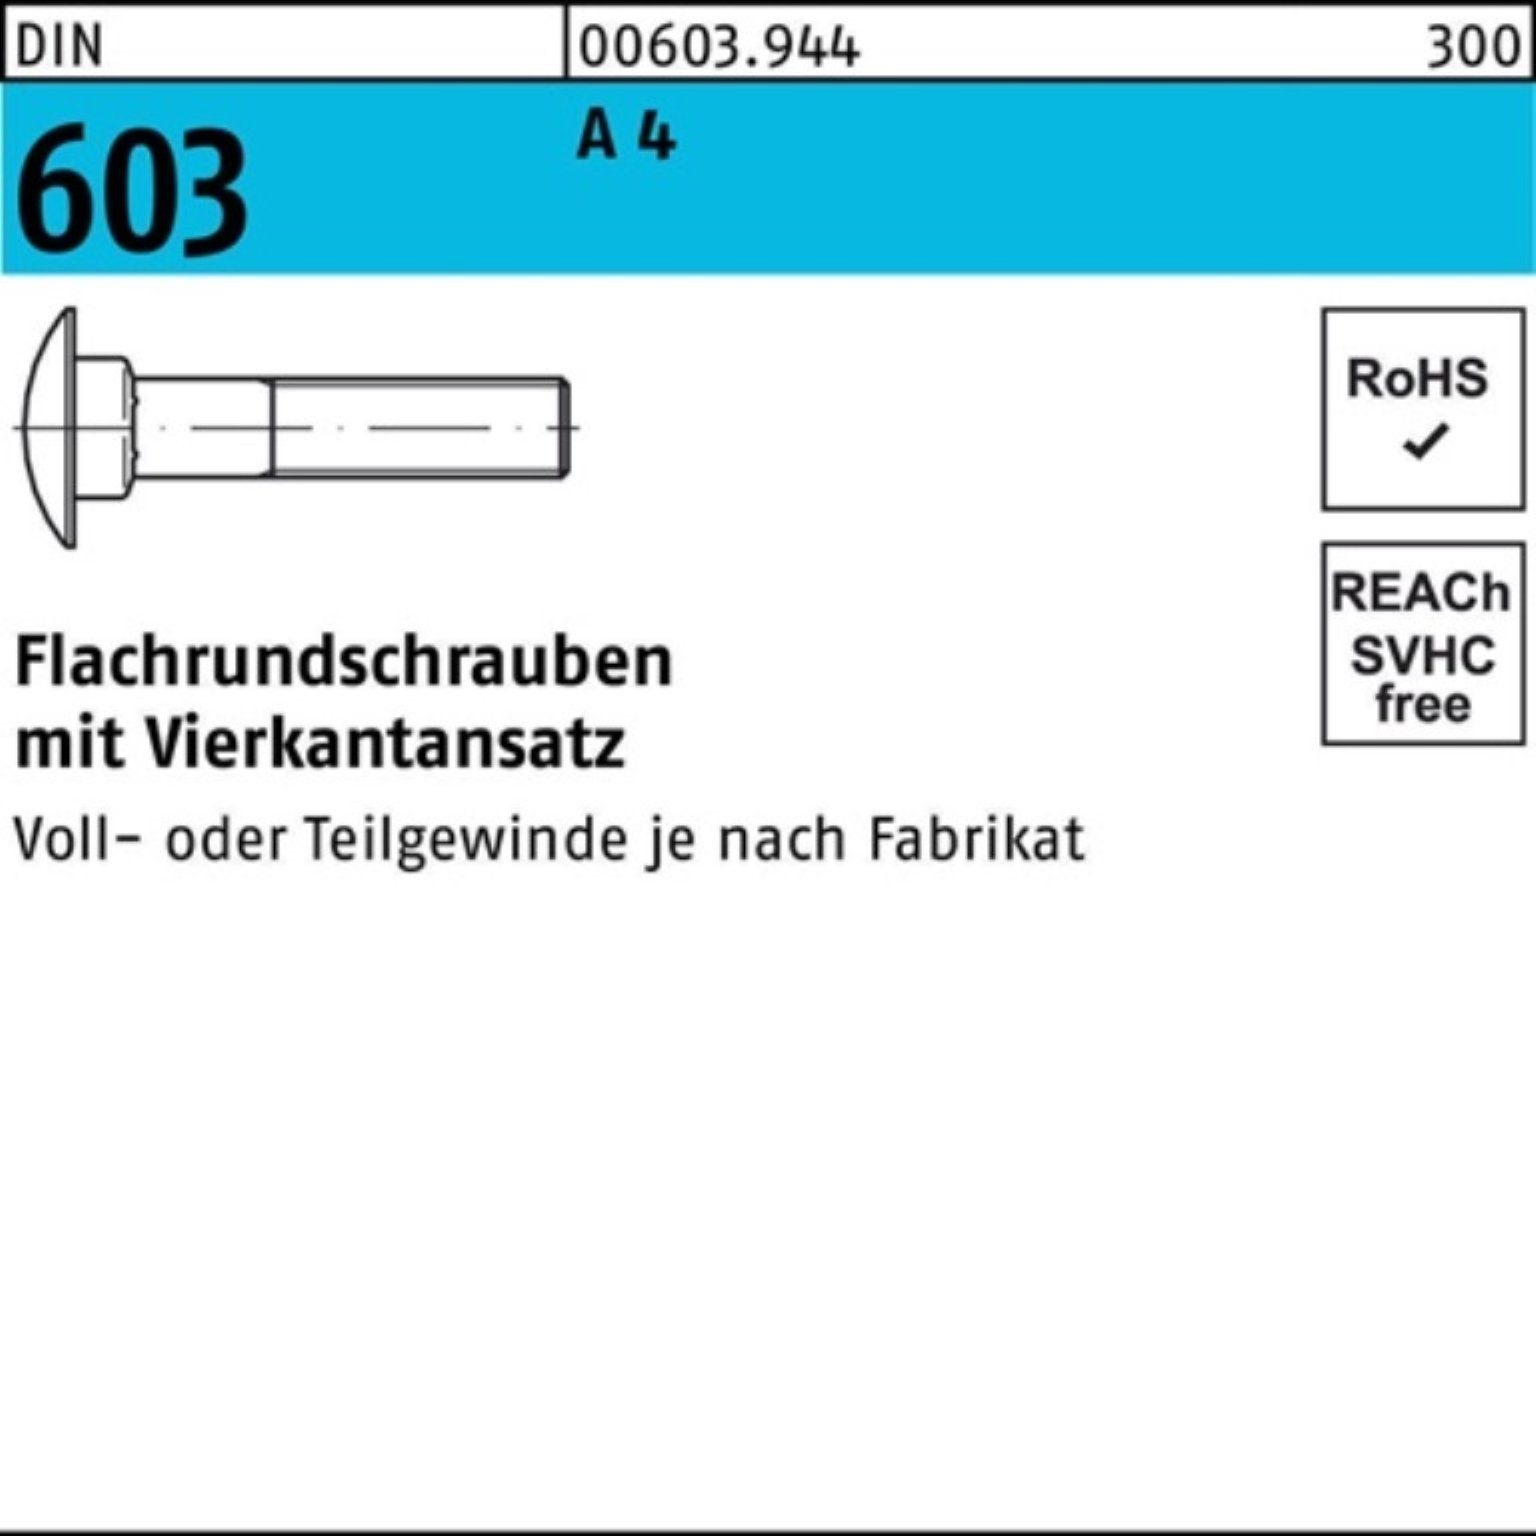 Reyher Schraube 100er Pack Flachrundschraube DIN 603 Vierkantansatz M16x 60 A 4 1 Stü